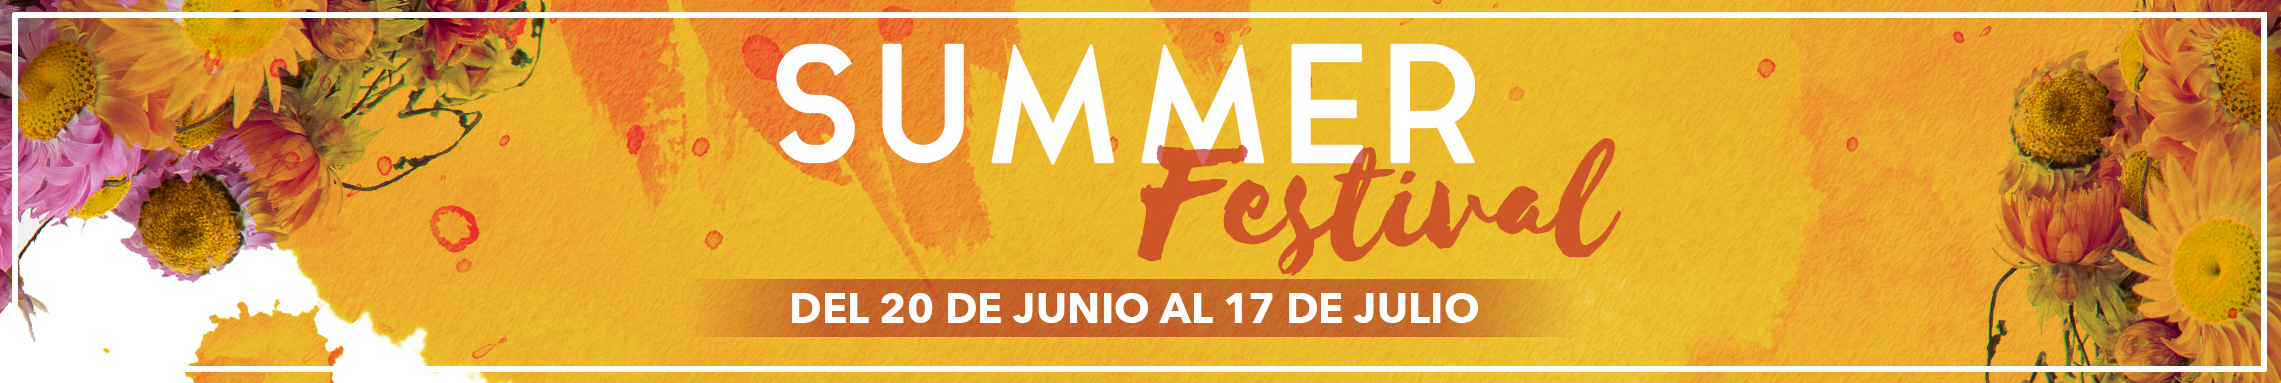 summer-festival-banner-cat-ES.jpg